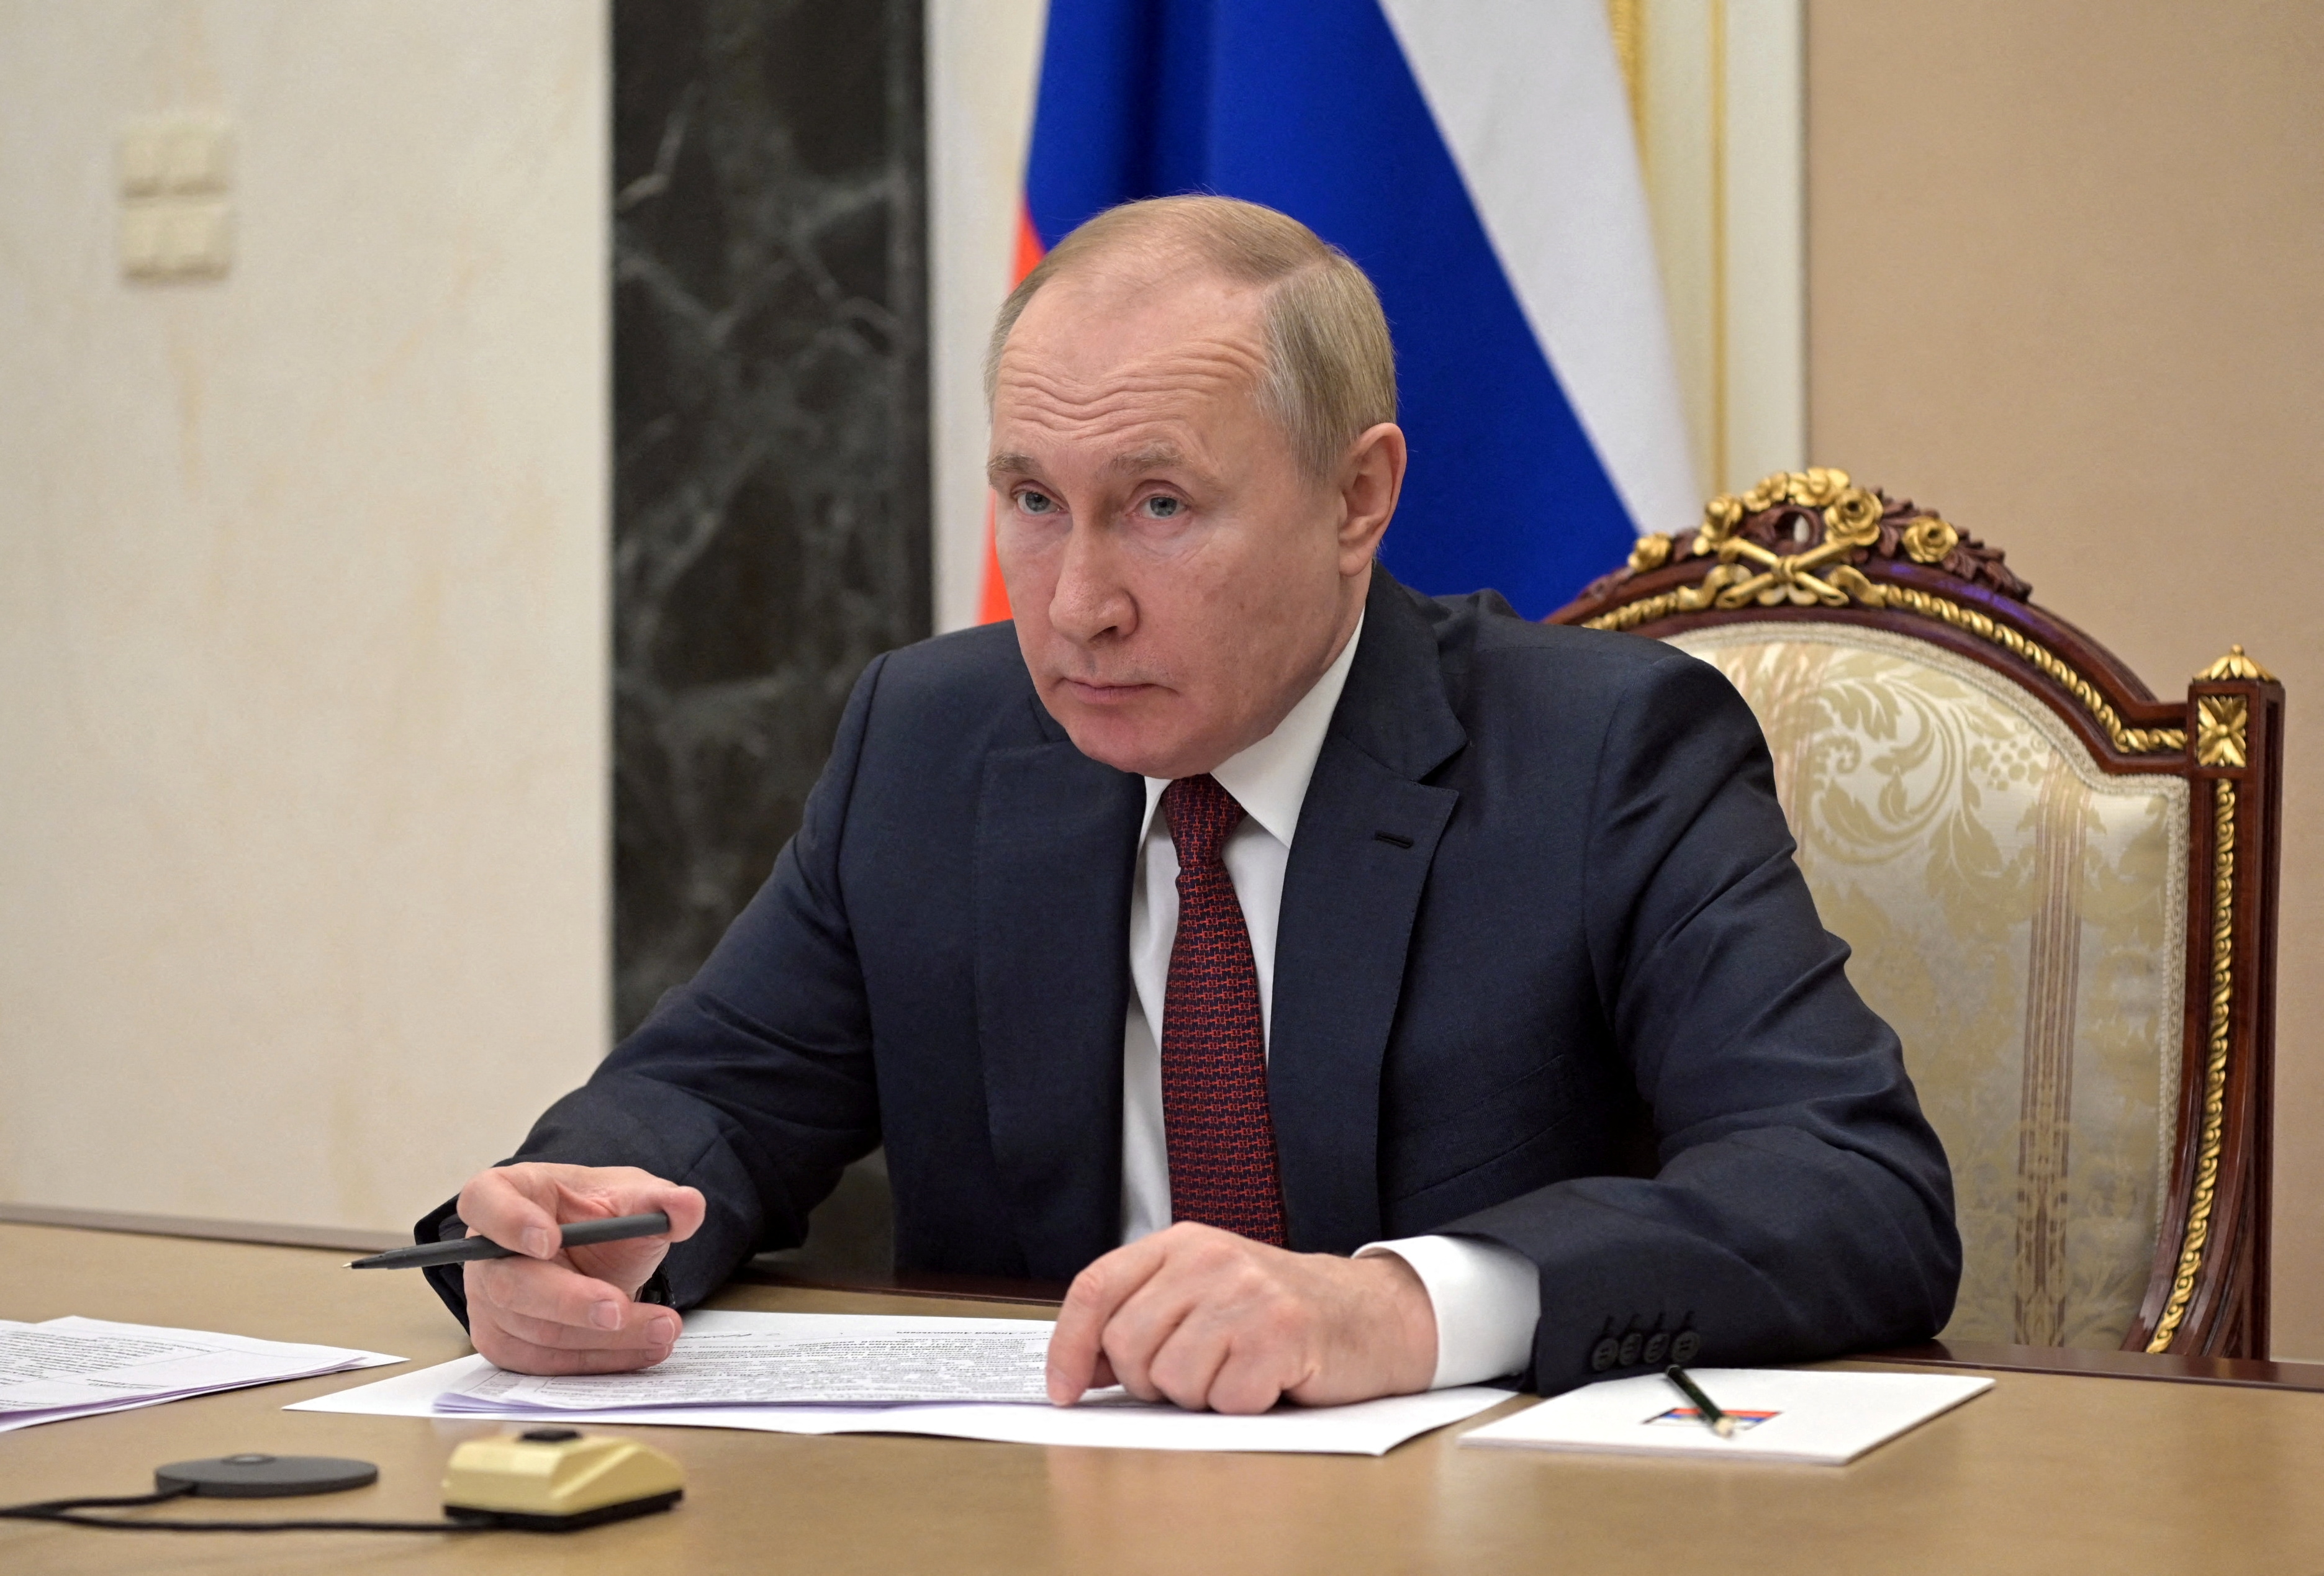 Rysslands president Vladimir Putin deltar i ett möte med regeringsmedlemmar via en videolänk i Moskva, Ryssland 12 januari 2022. Sputnik/Alexei Nikolsky/Kremlin via REUTERS